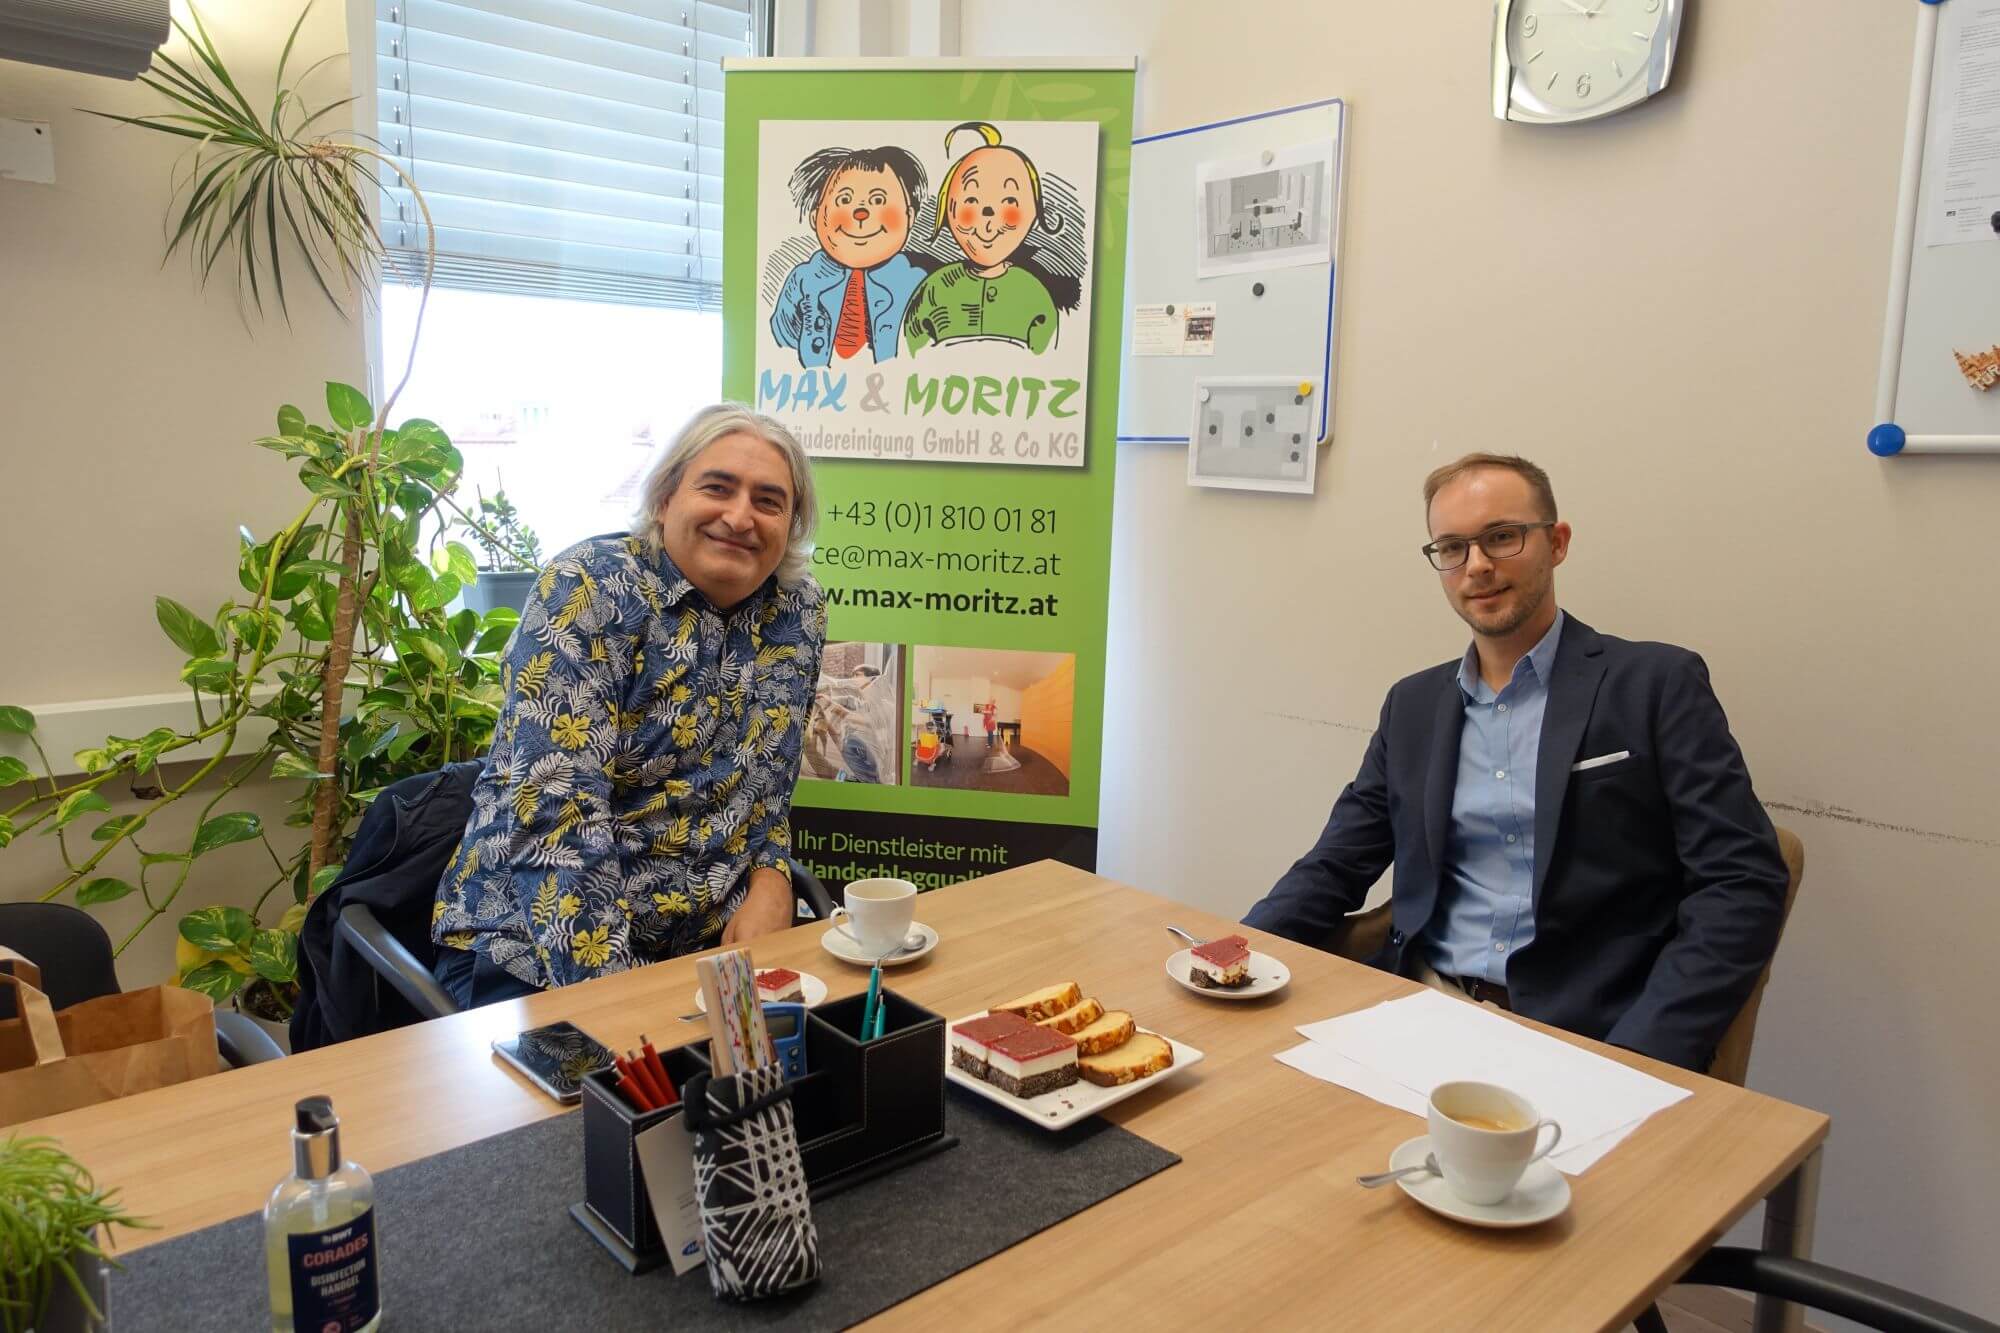 Rene Holubar und Thomas Rihl an einem Tisch im Büro von Rene Holubar.